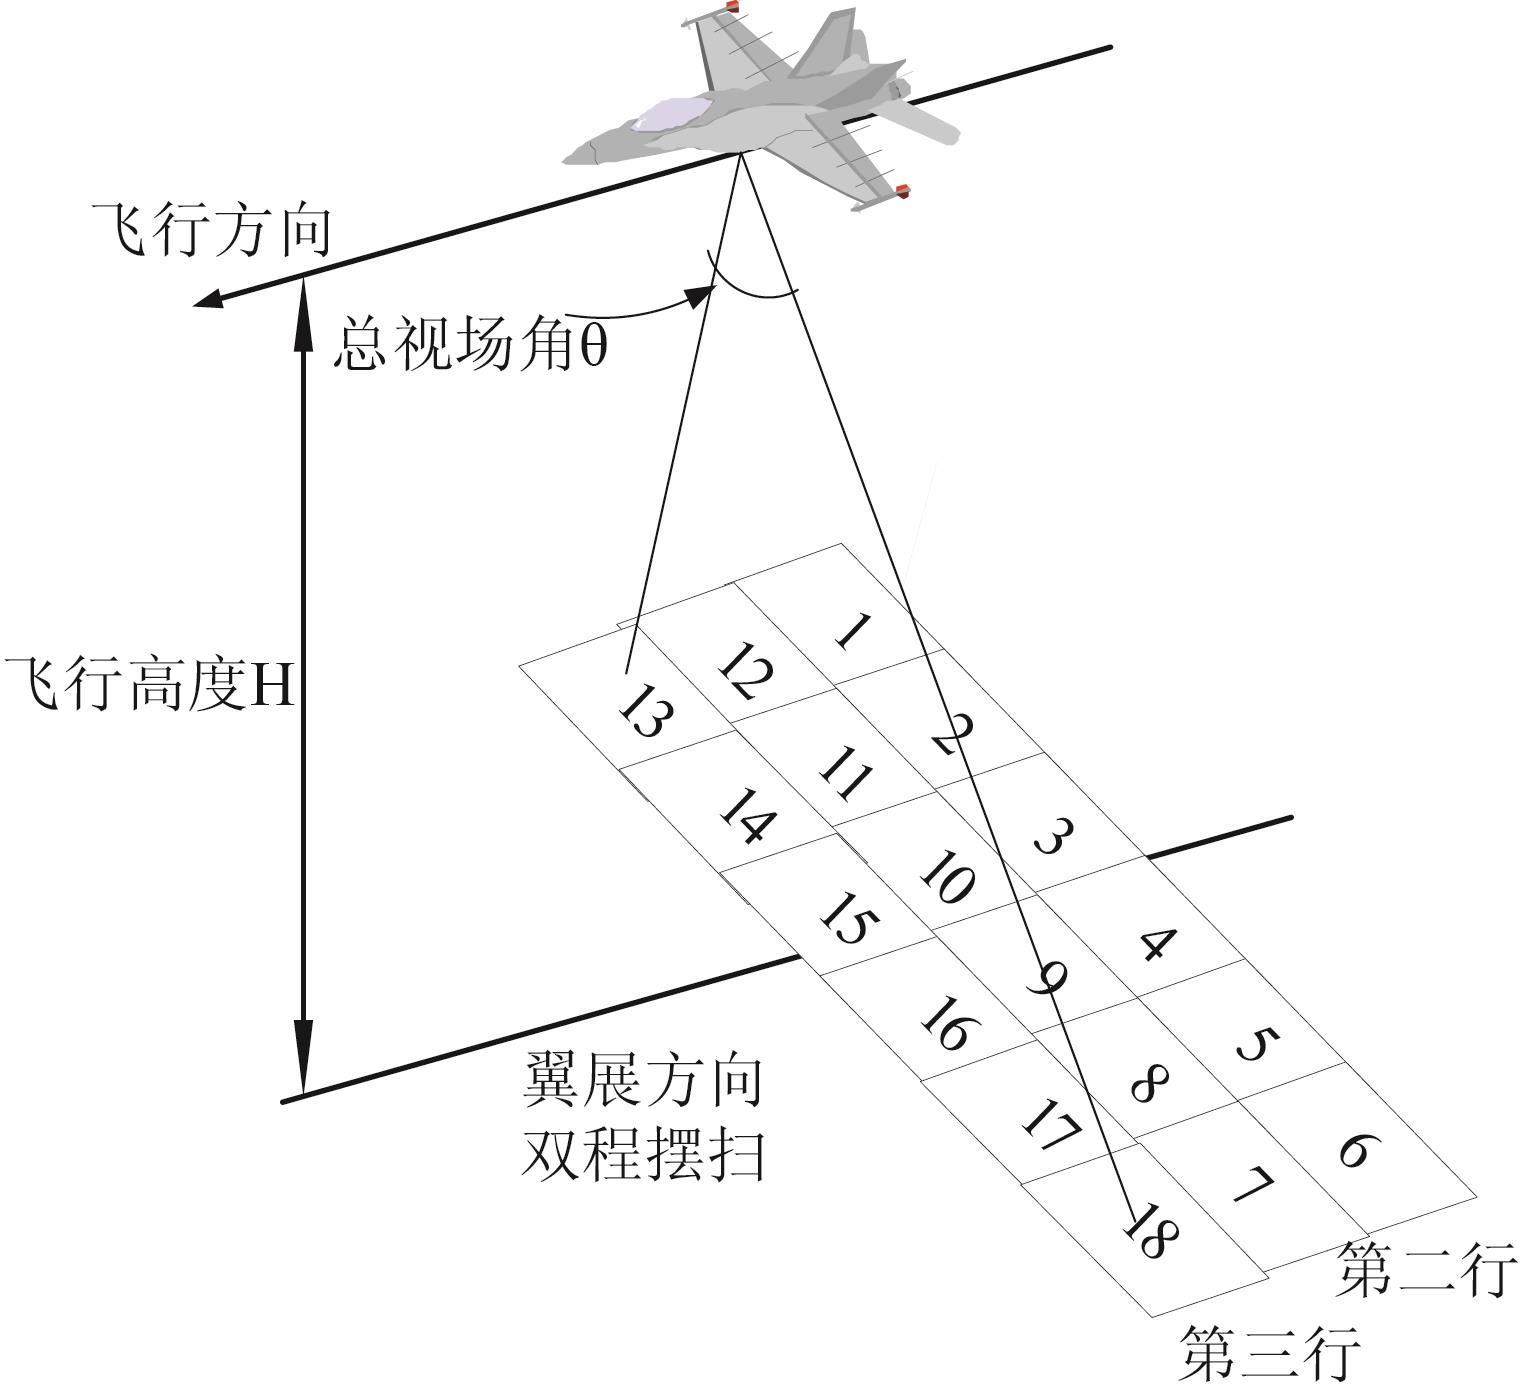 UAV bi-directional whiskbroom scanning system